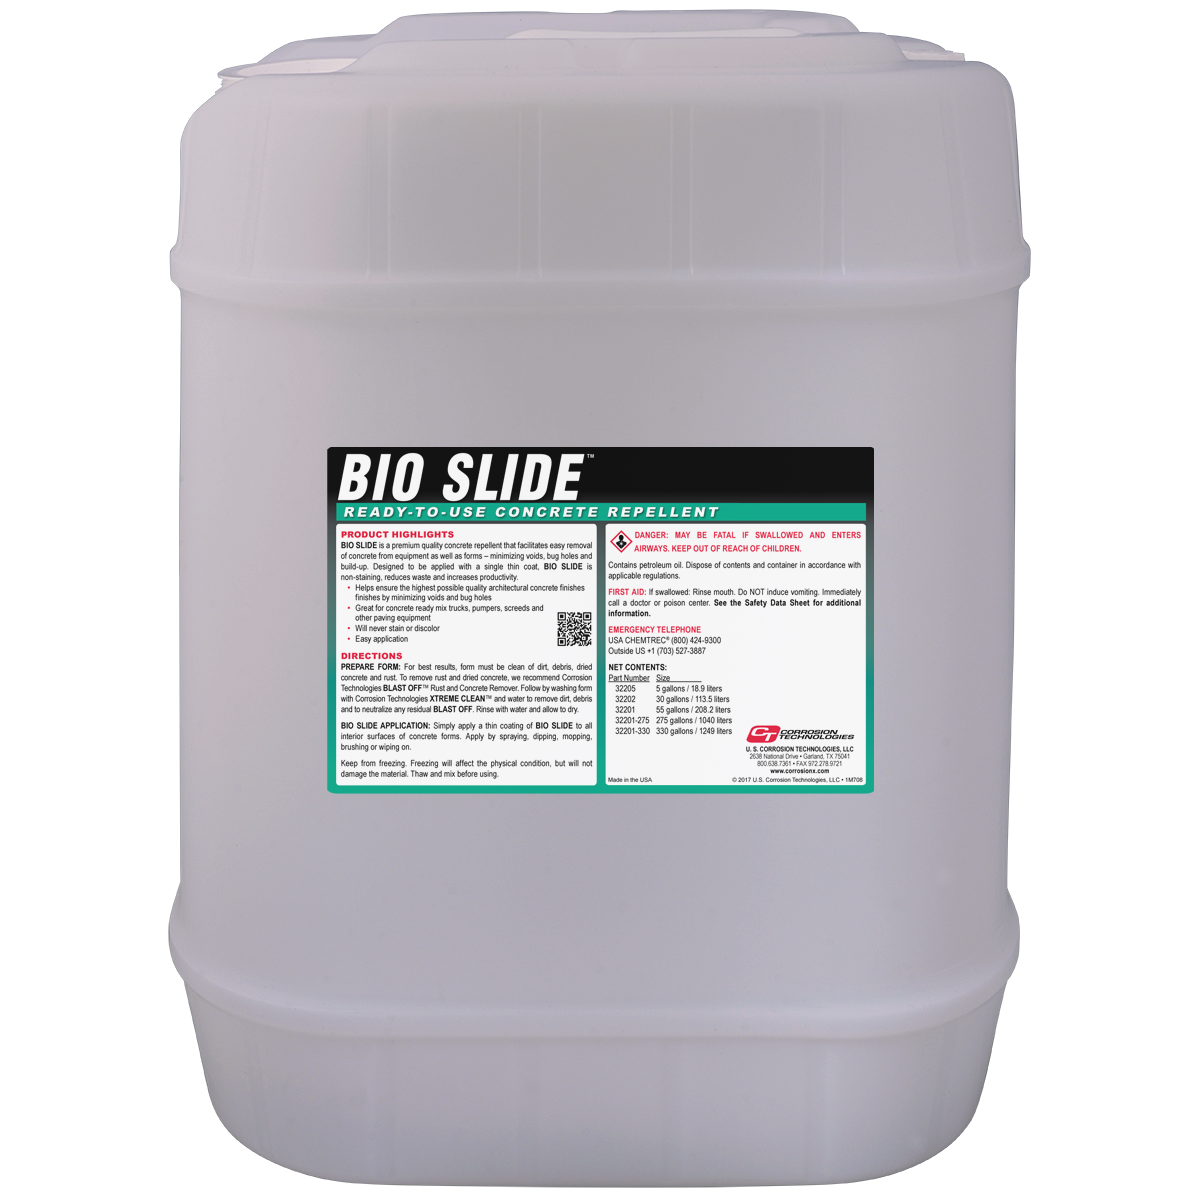 Bio Slide concrete form release